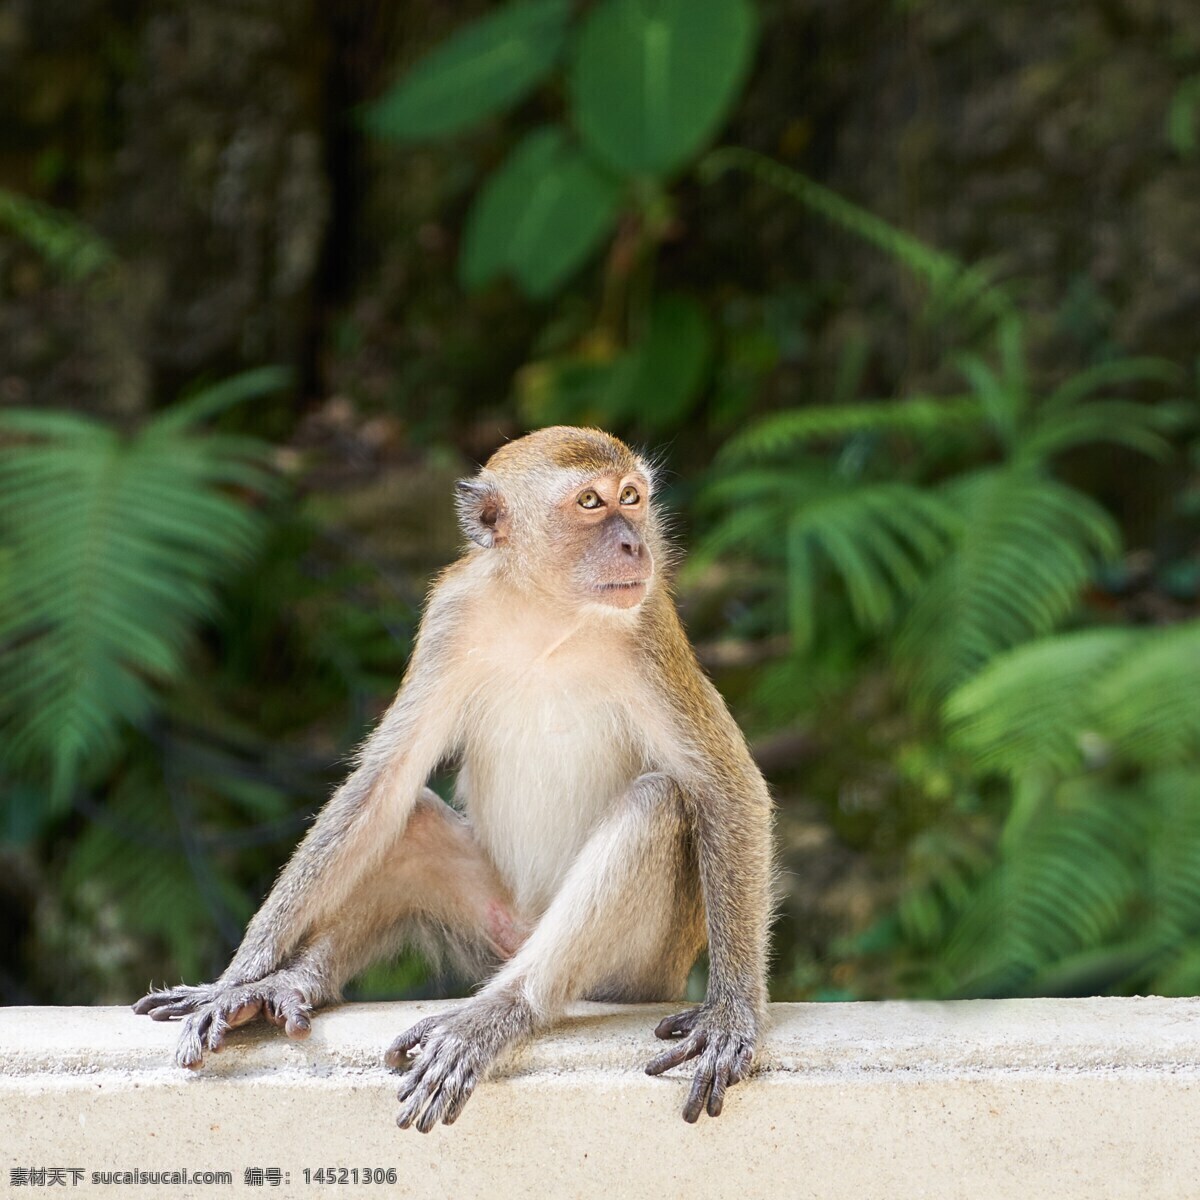 野生小猿猴 猴子 猿猴 小猿猴 野生猿猴 野生 灵长目 野生动物 小猴 哺乳动物 保护动物 生物世界